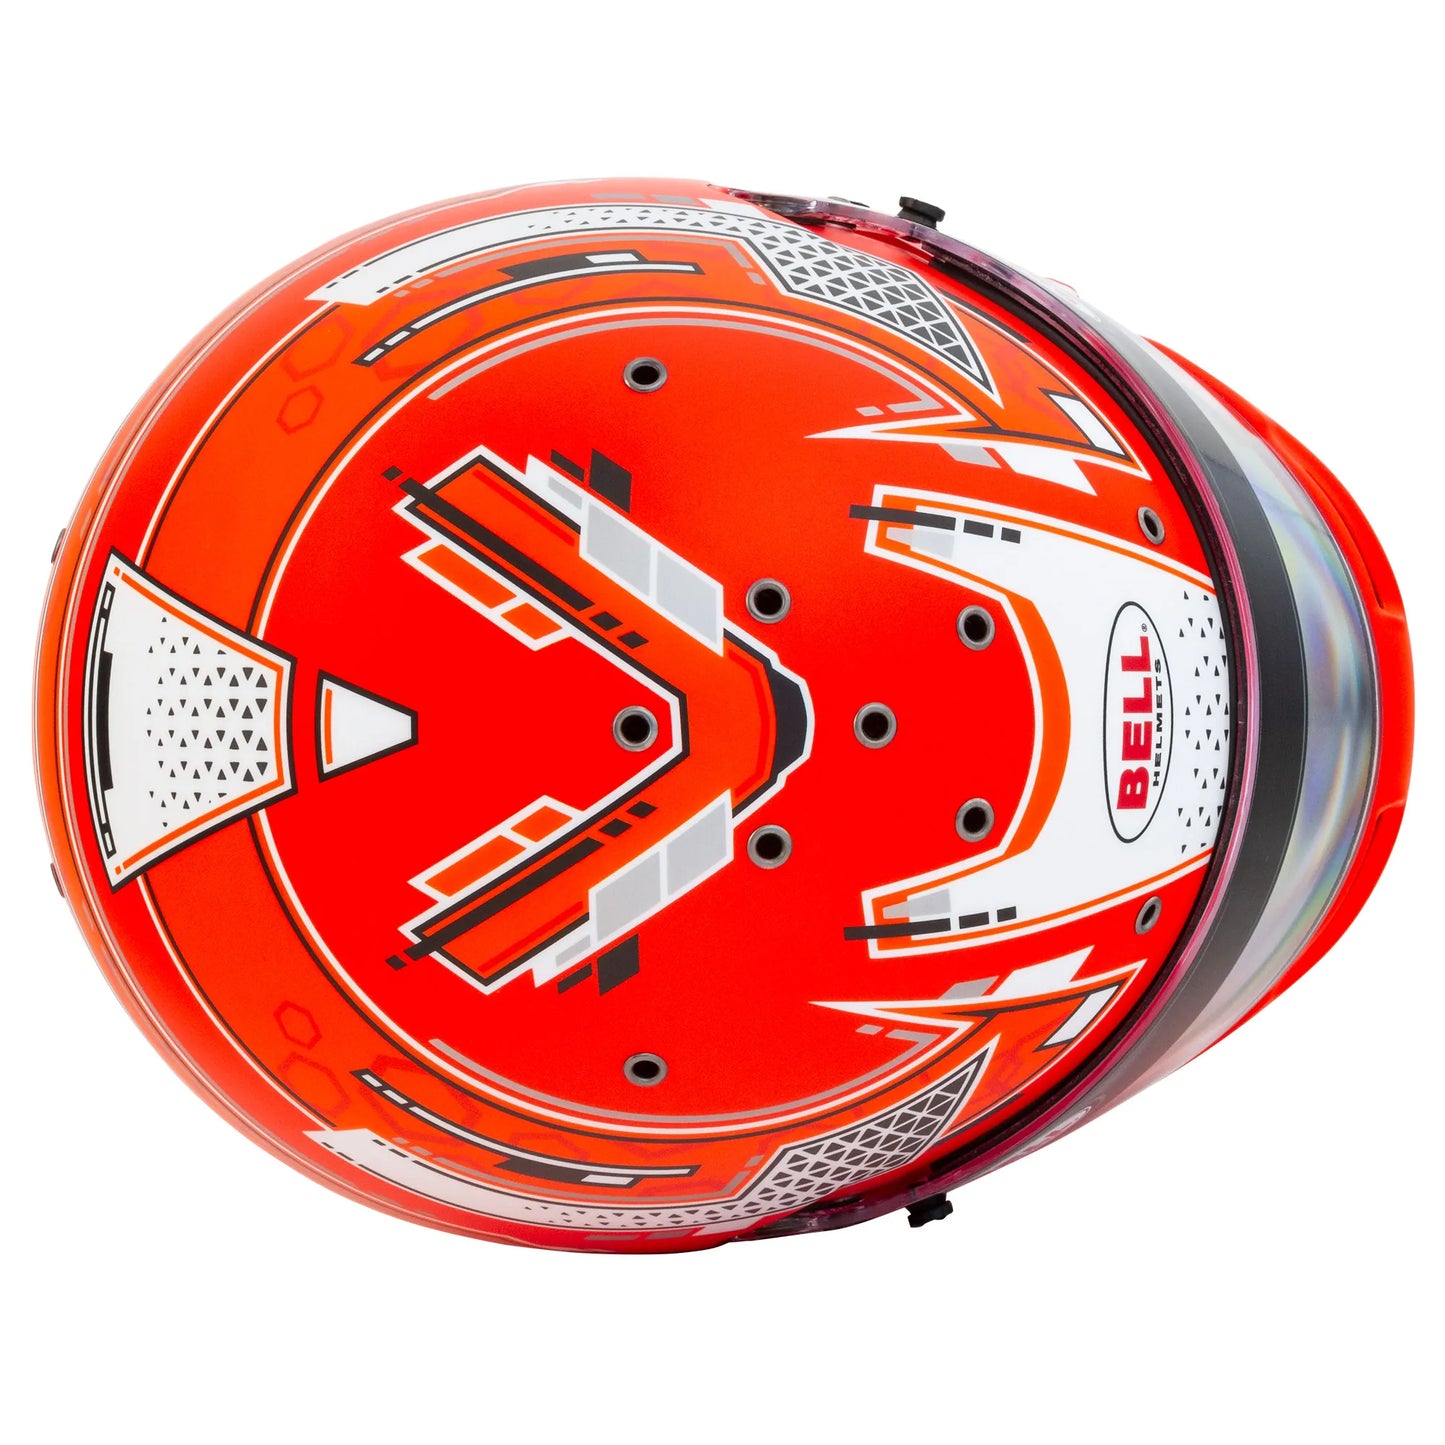 top view of composite RS7 helmet